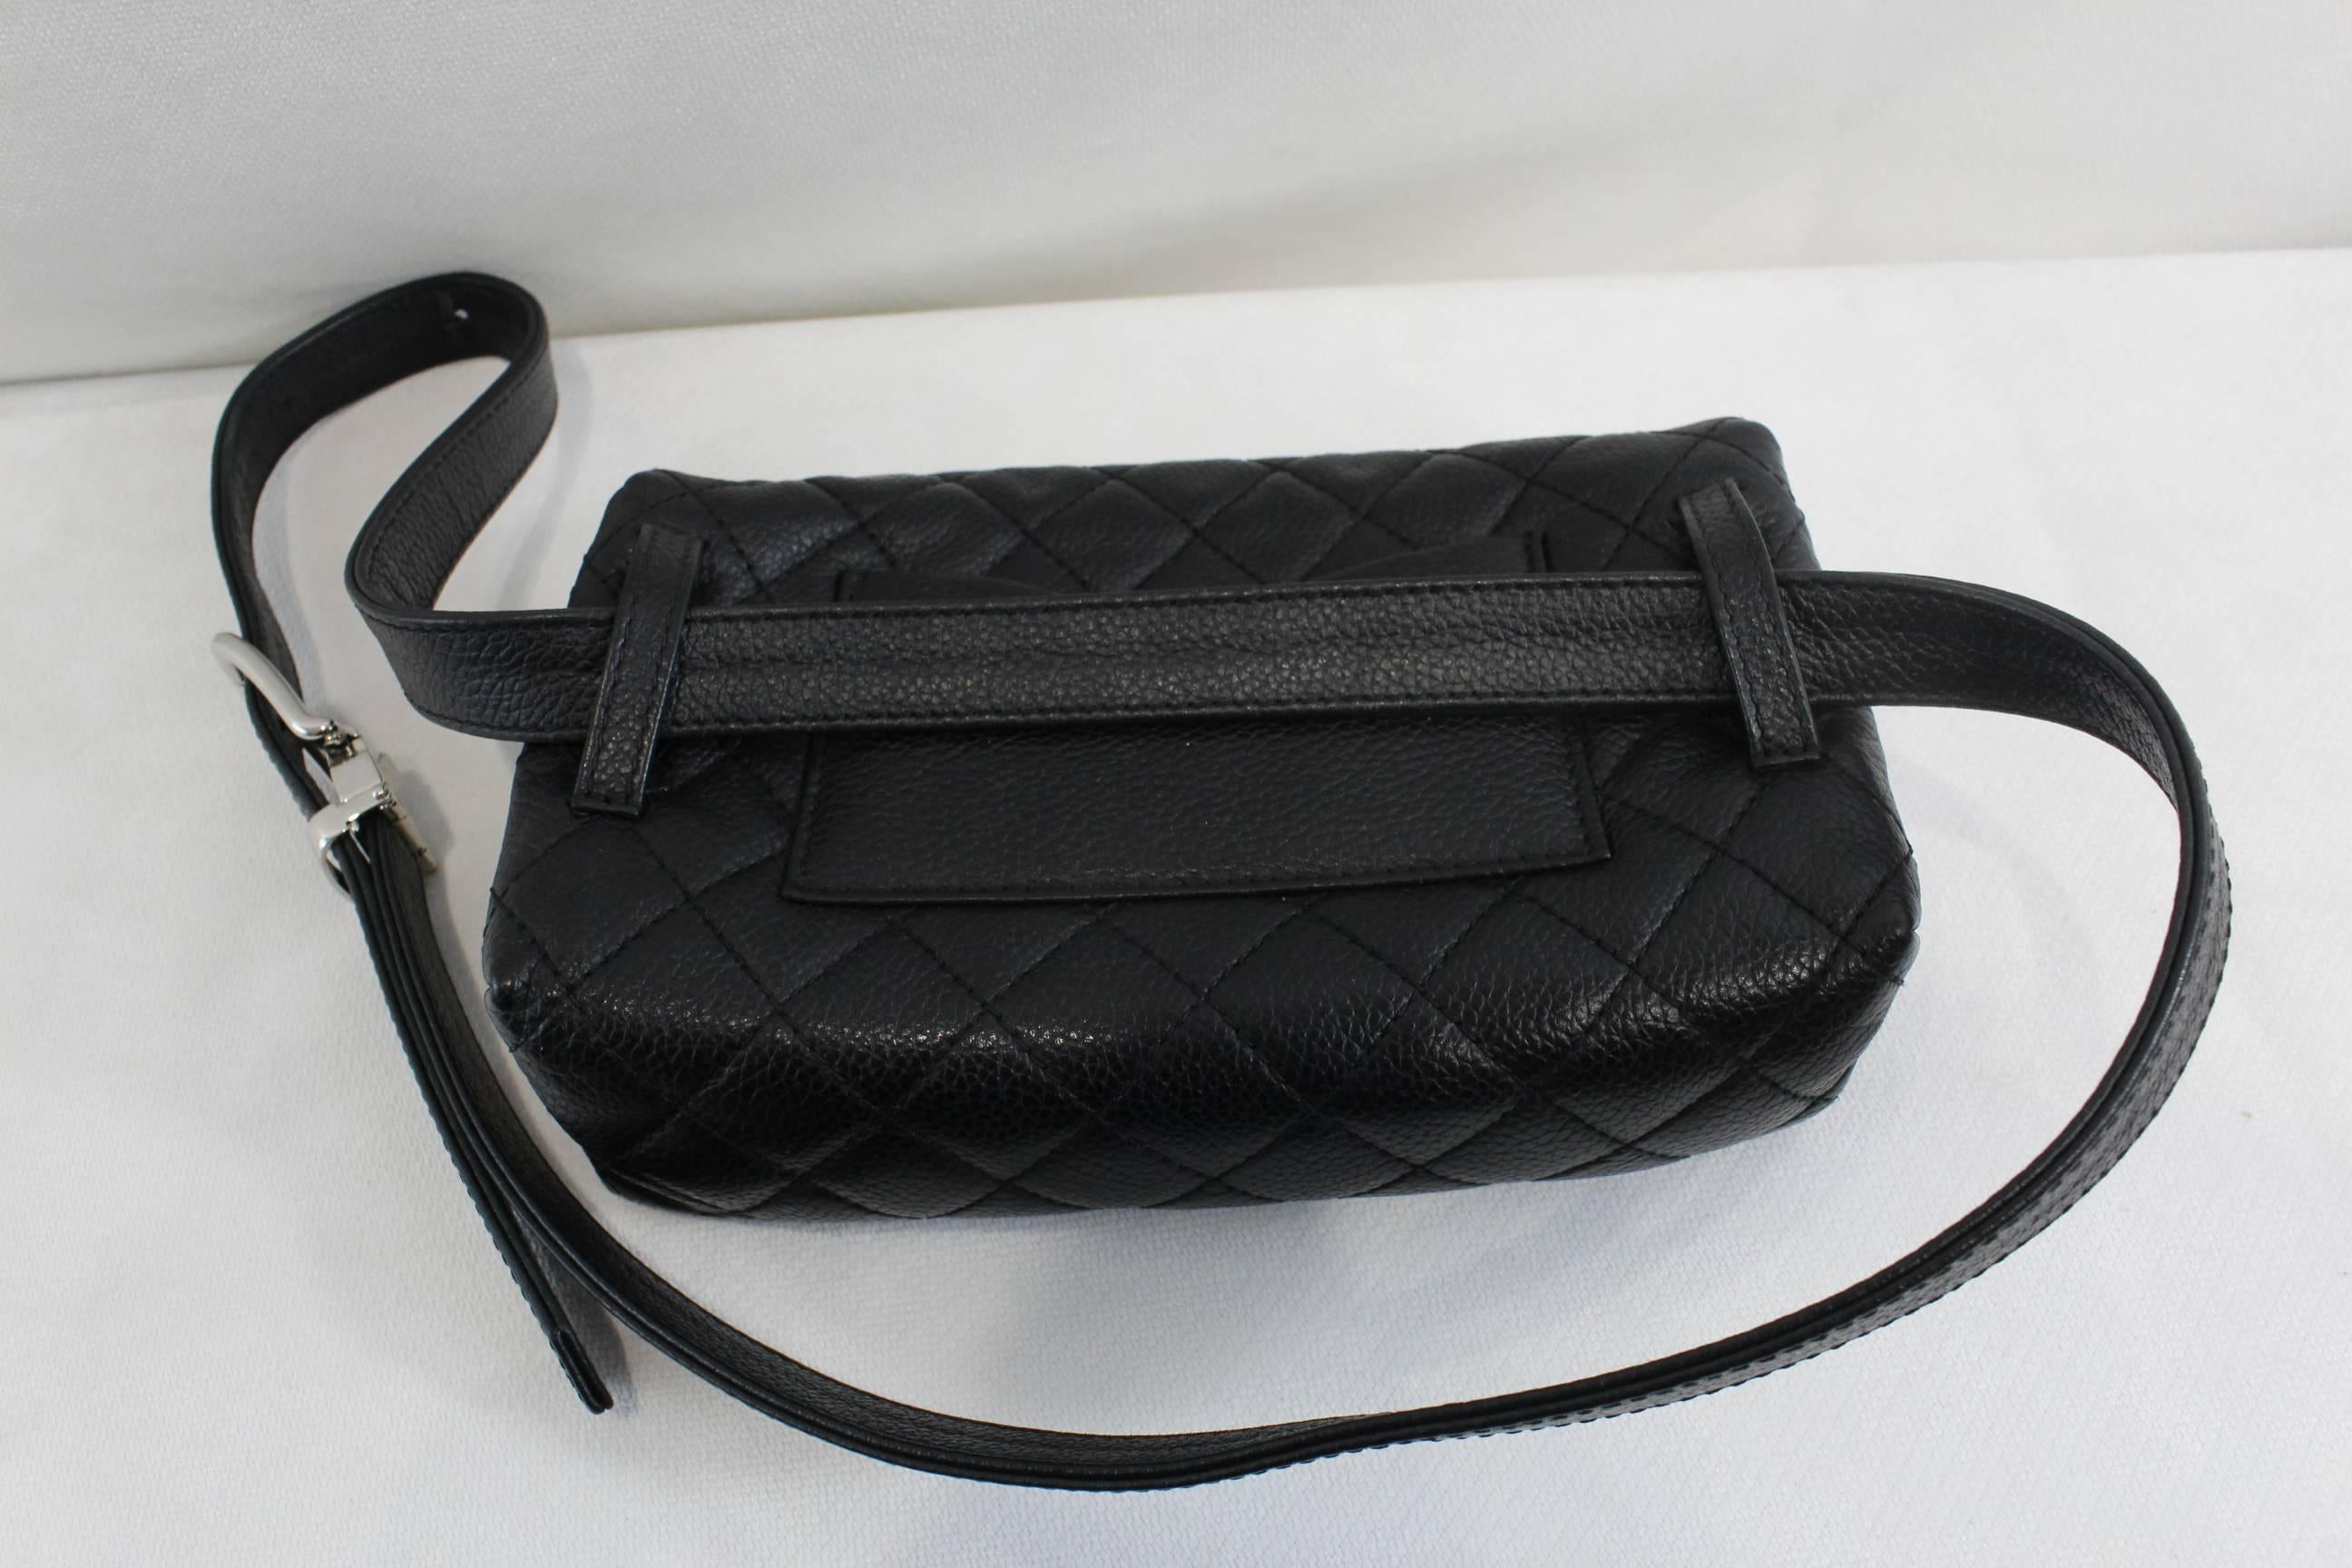 Women's Chanel Uniform Belt Bag in Black Caviar Leather